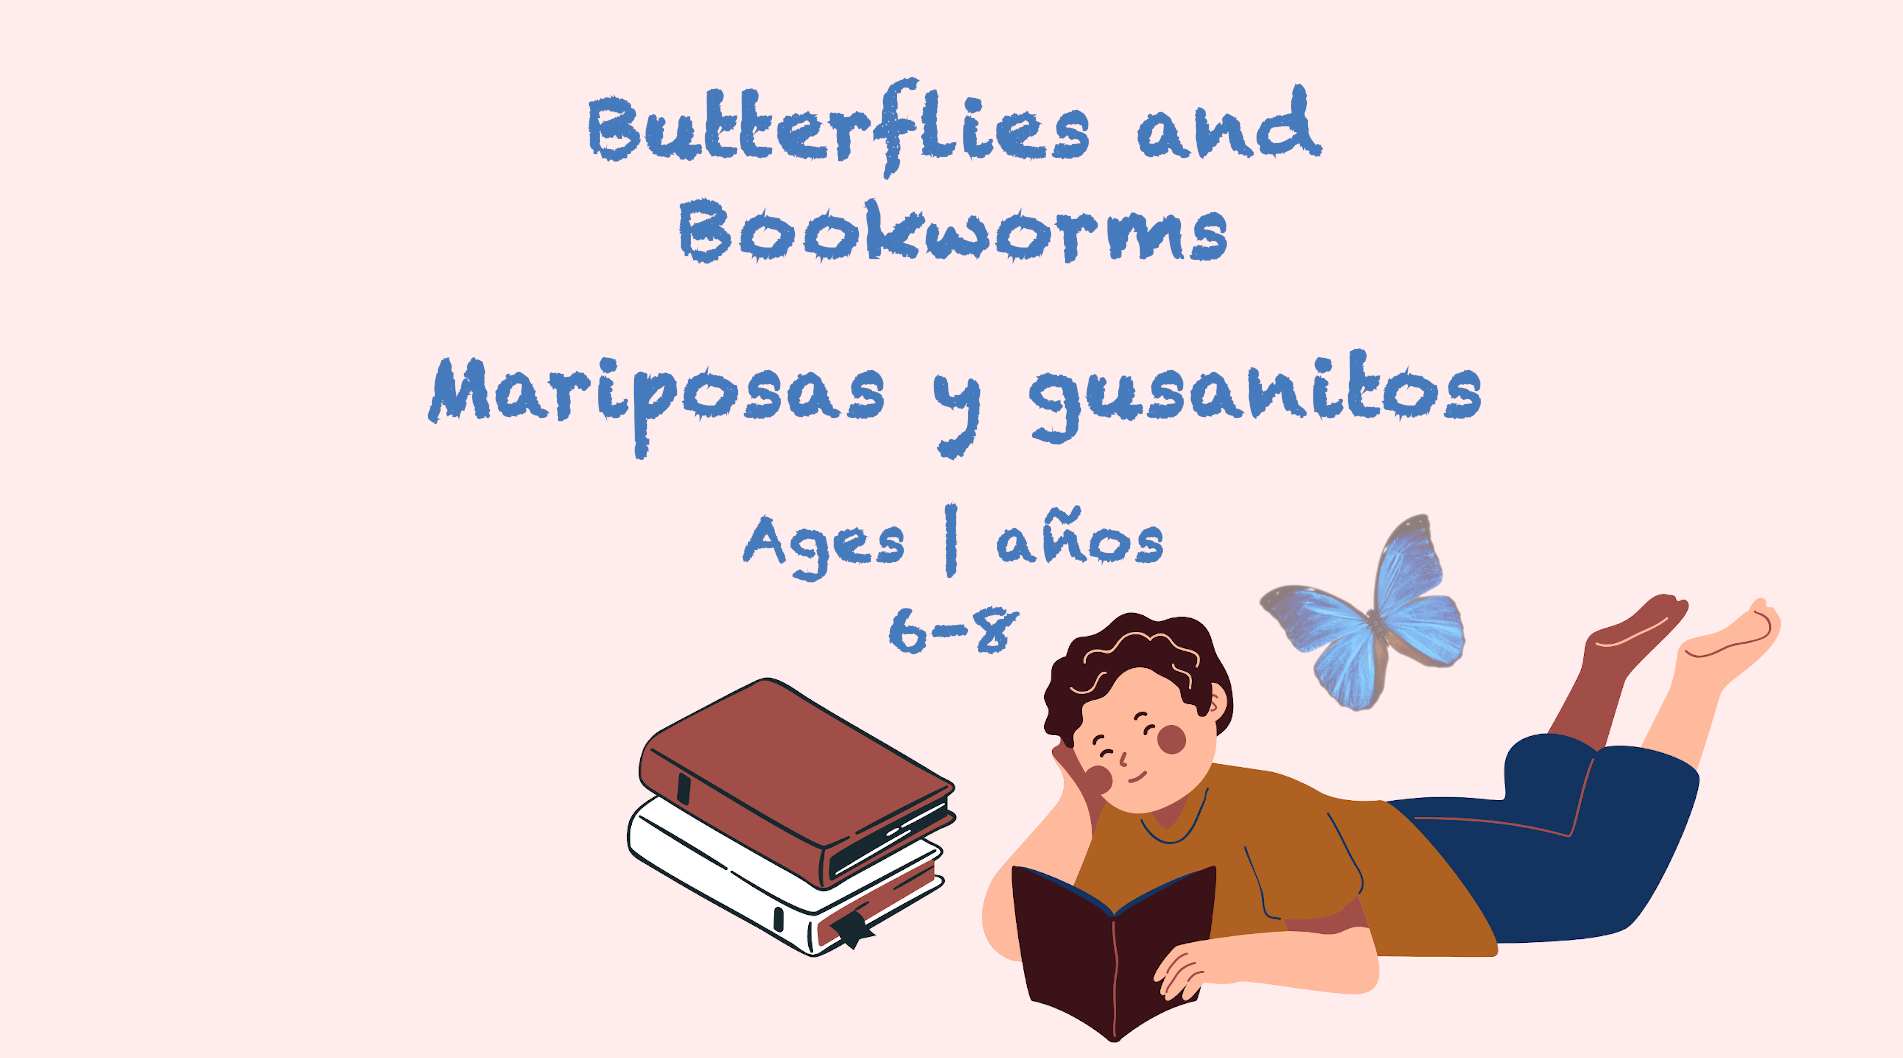 Mariposas y ratones de biblioteca para niños de 6 a 8 años